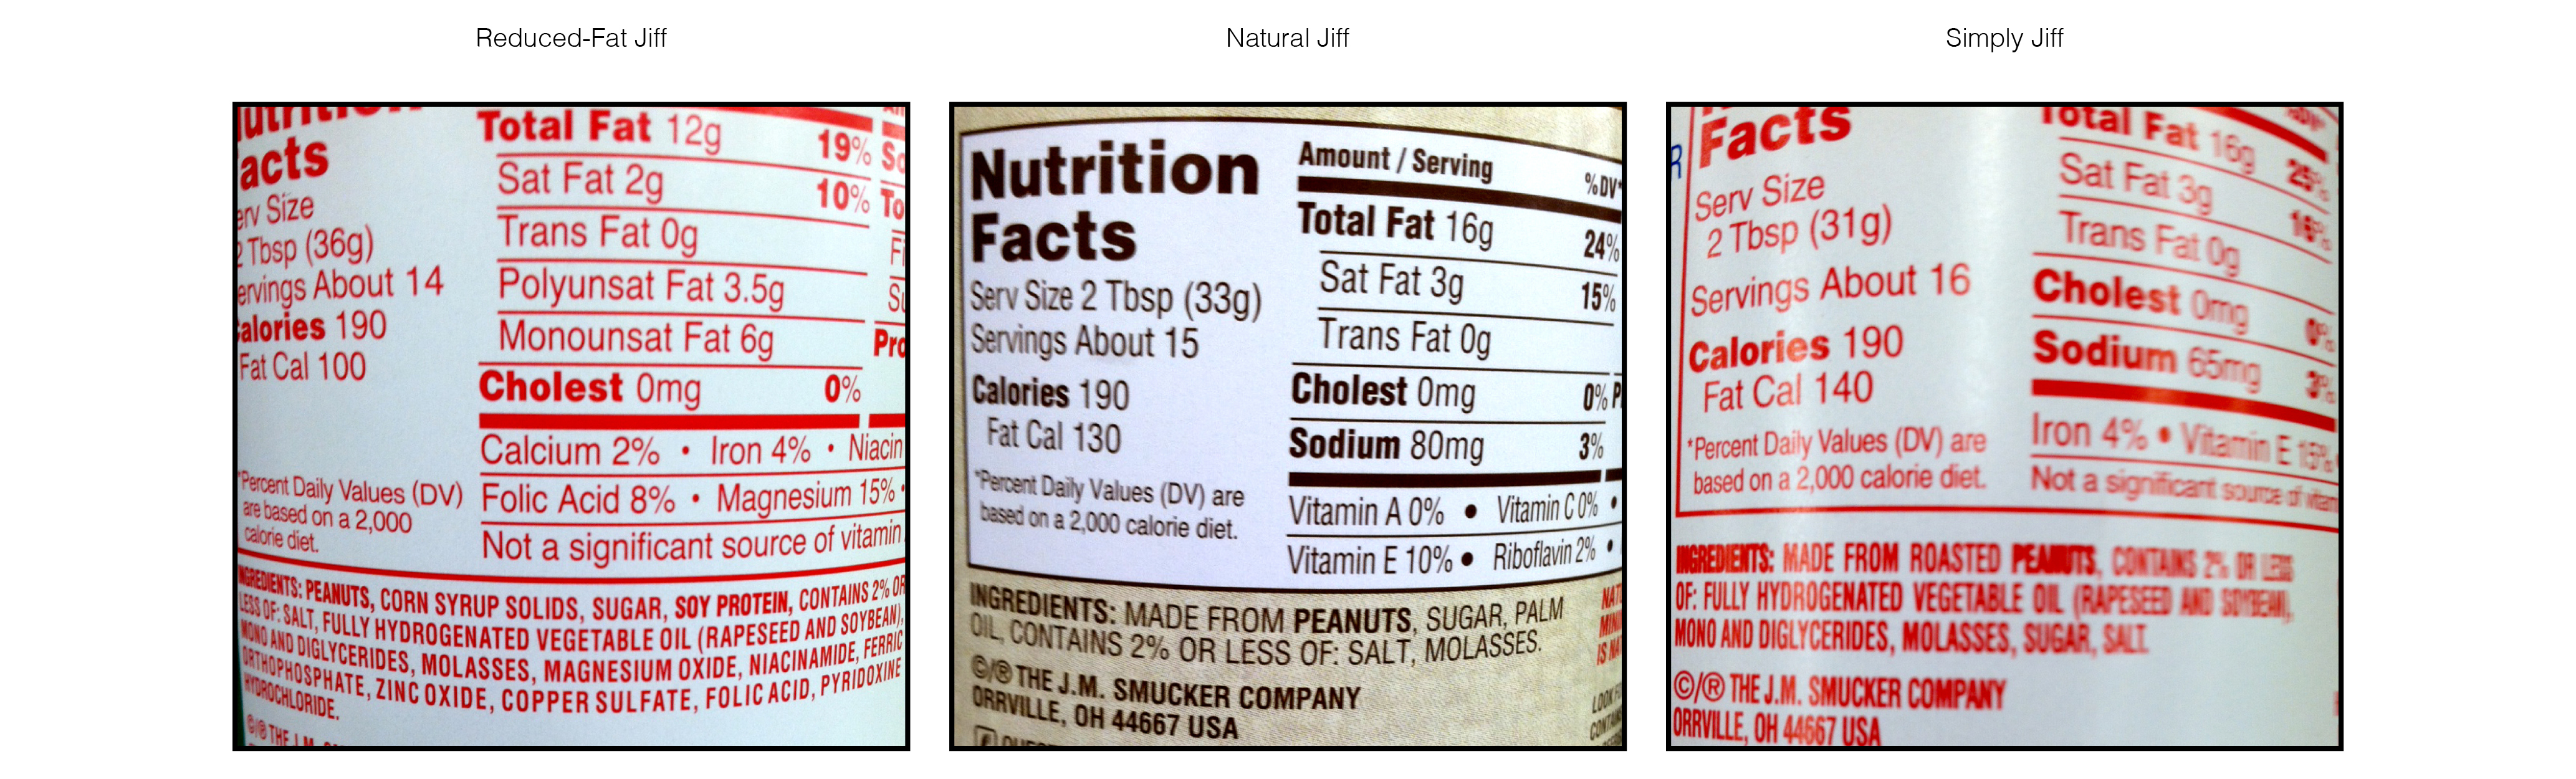 Jiff Reduced Fat Peanut Butter 114